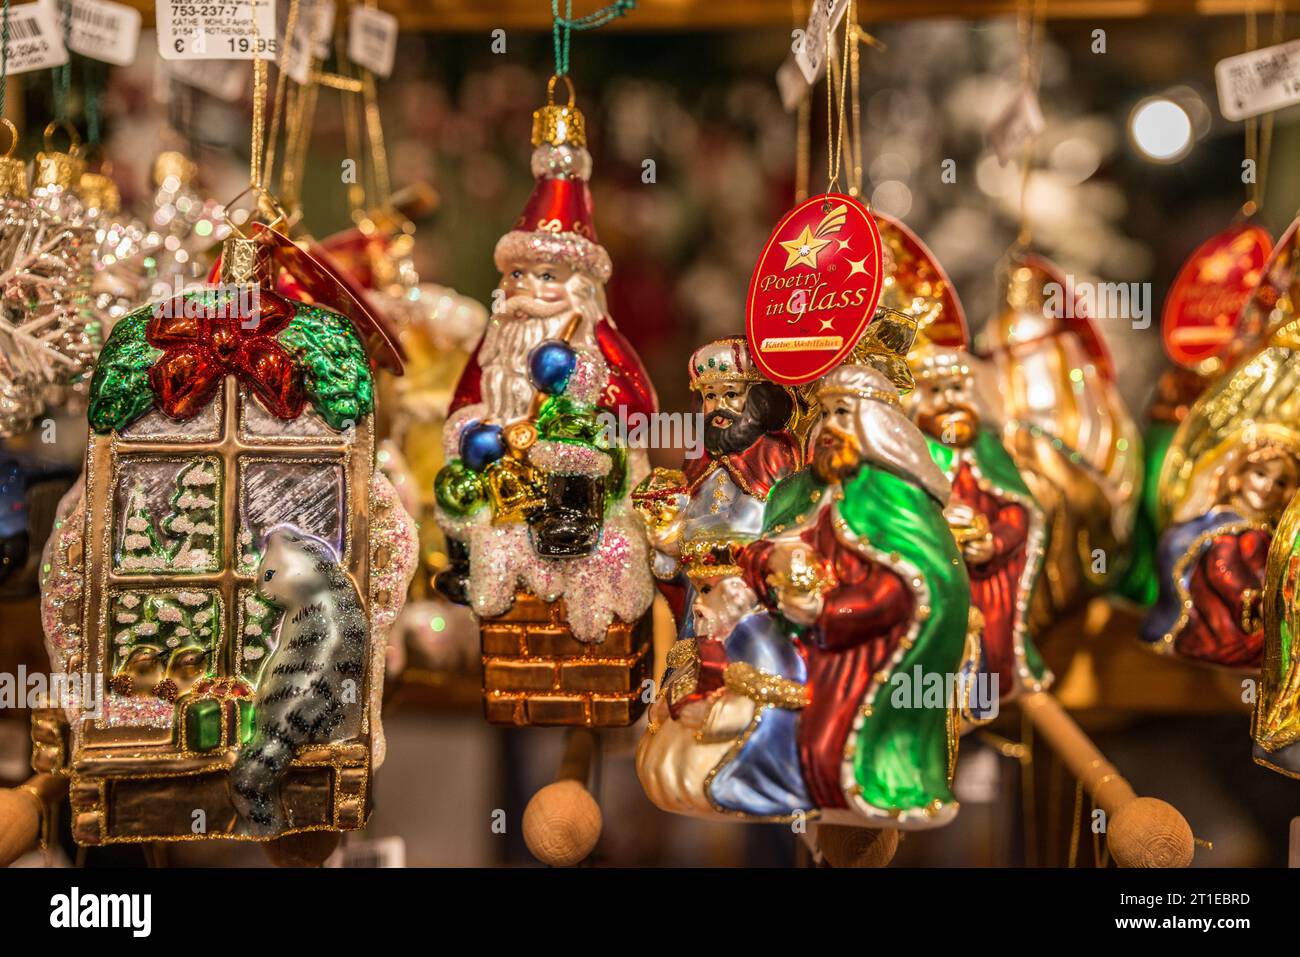 Münster, Germania - 11 dicembre 2014: Decorazioni dell'albero di Natale in vendita all'annuale mercatino di Natale. Foto Stock